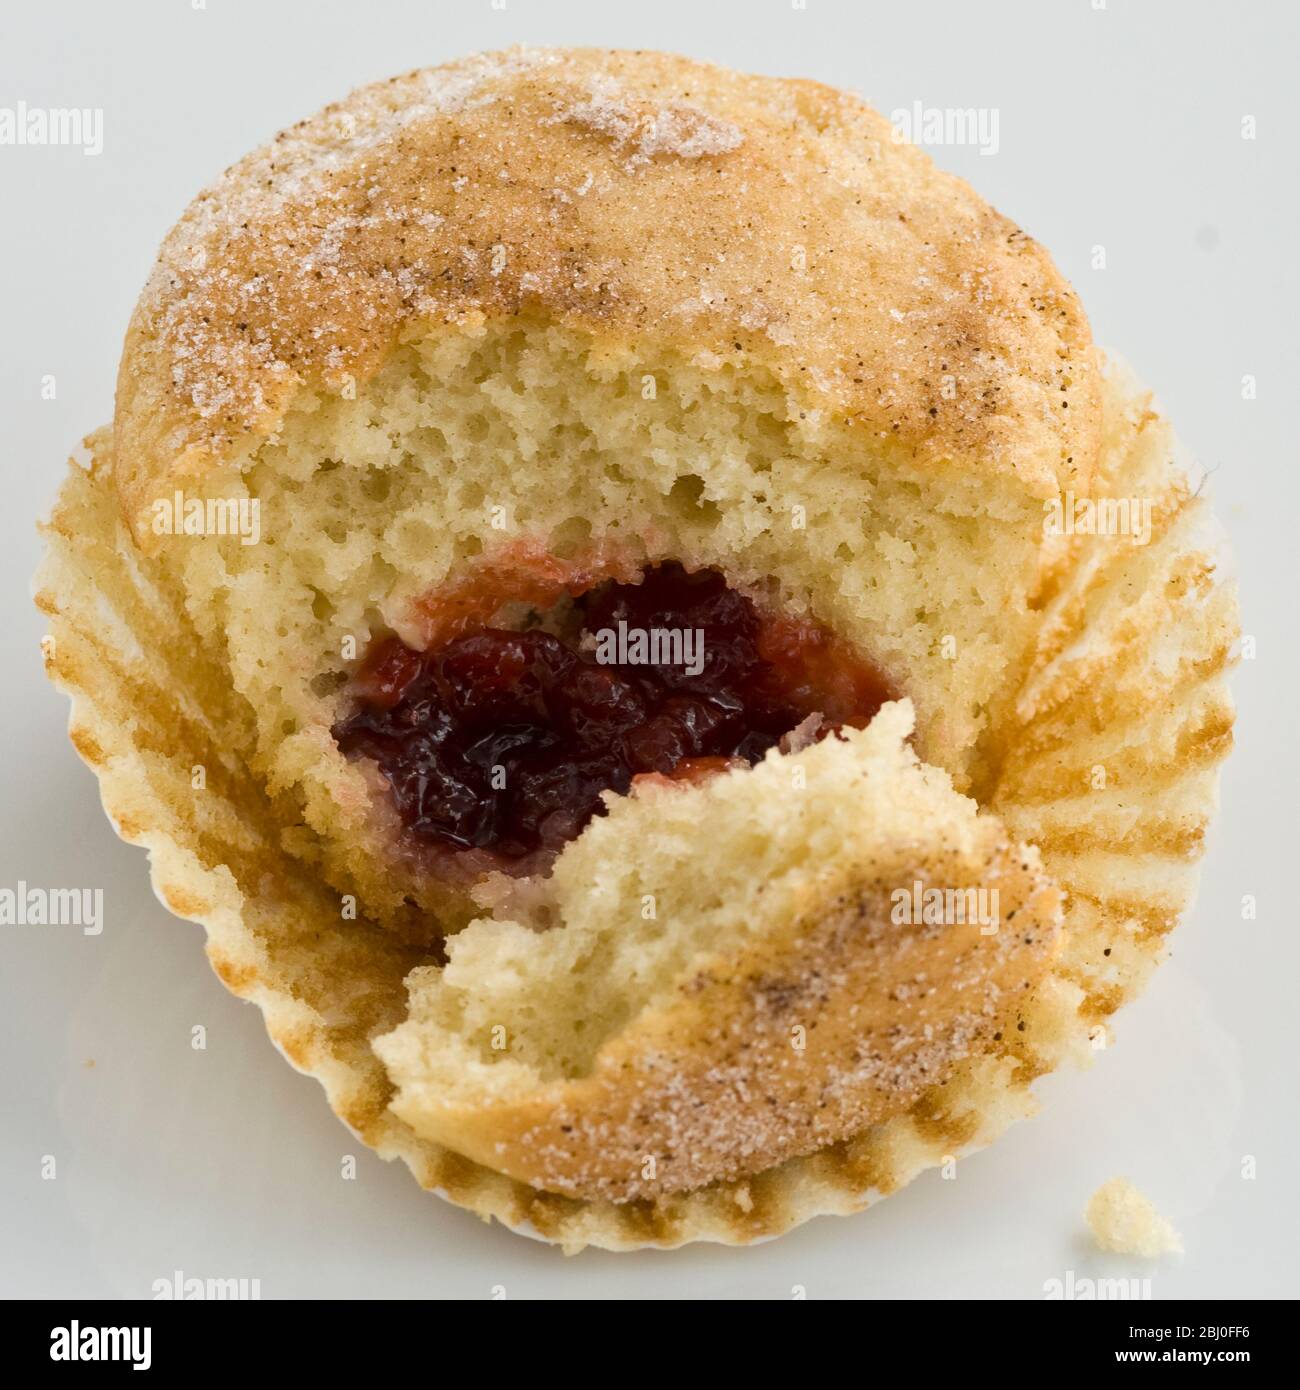 Muffin avec dessus sucré rempli de confiture (gelée), cassé ouvert pour montrer remplissage. Un masquerading muffin comme un donut! - Banque D'Images